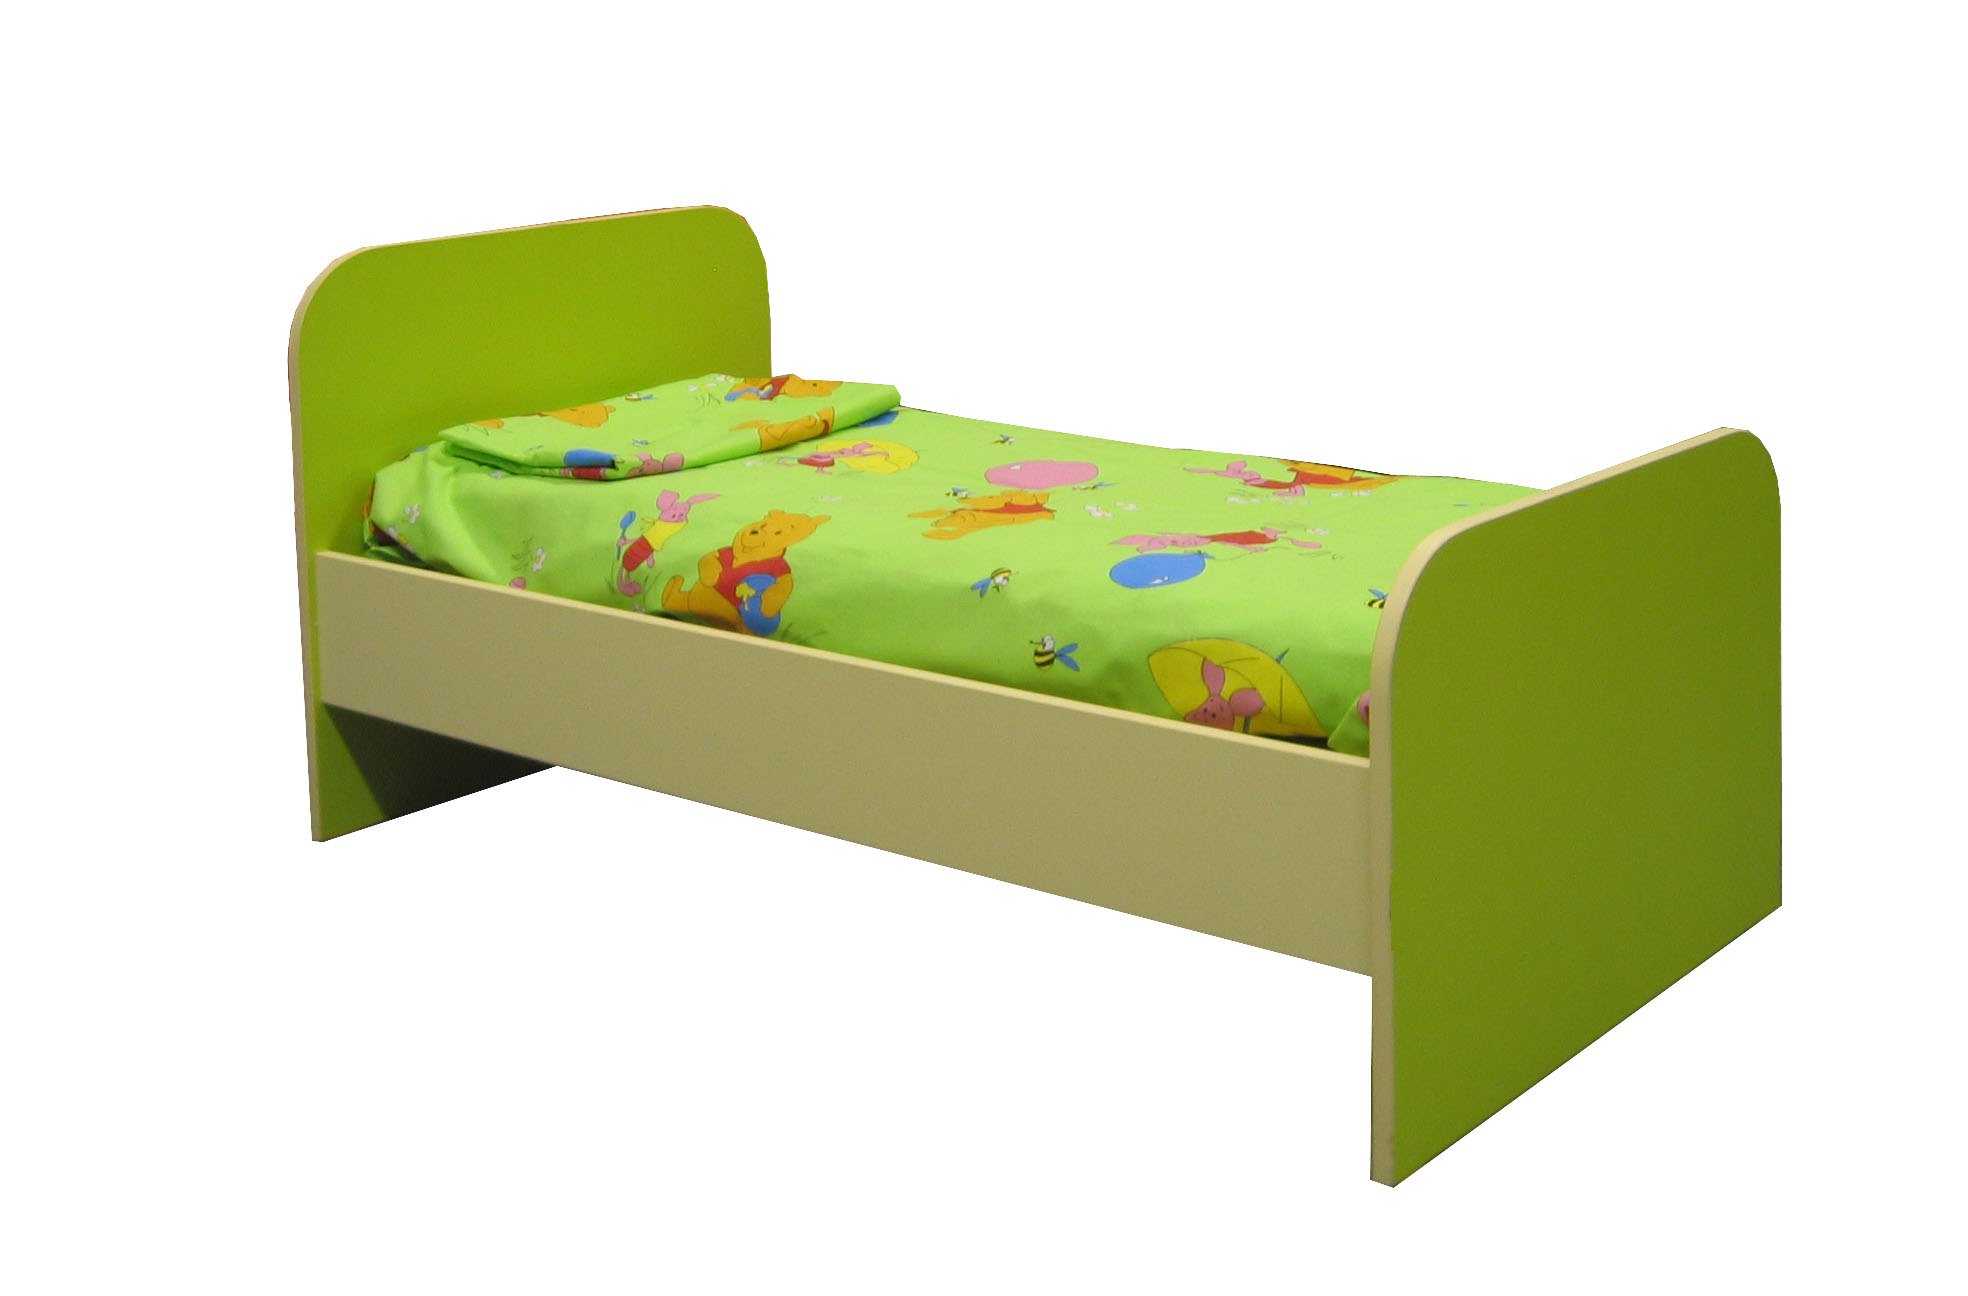 Кровать без изголовья – идеи подбора современного дизайна и стильных сочетаний с интерьером (125 фото)